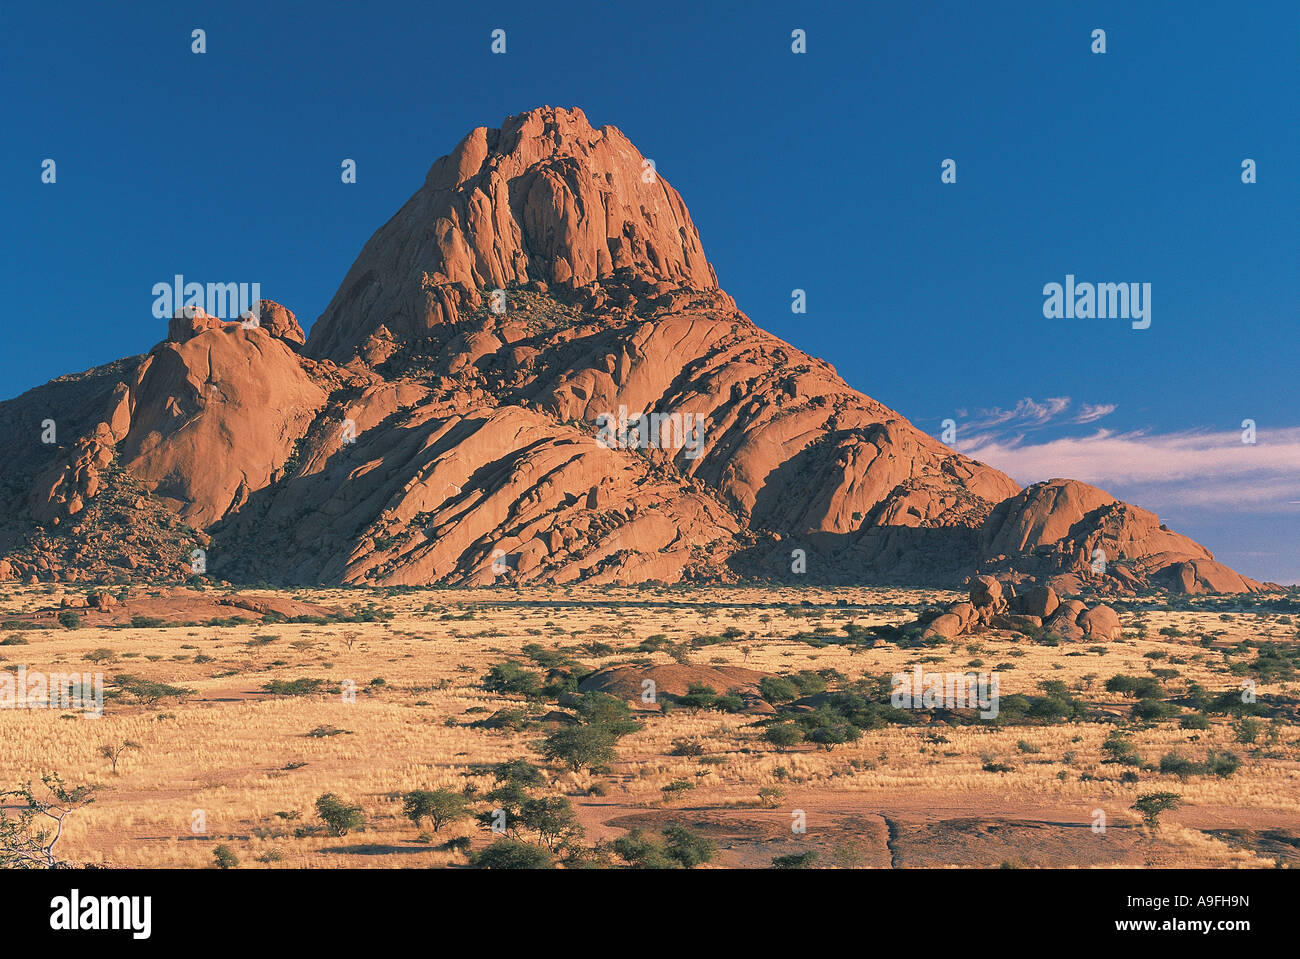 El pico de Namibia Spitzkoppe Sur áfrica occidental Foto de stock